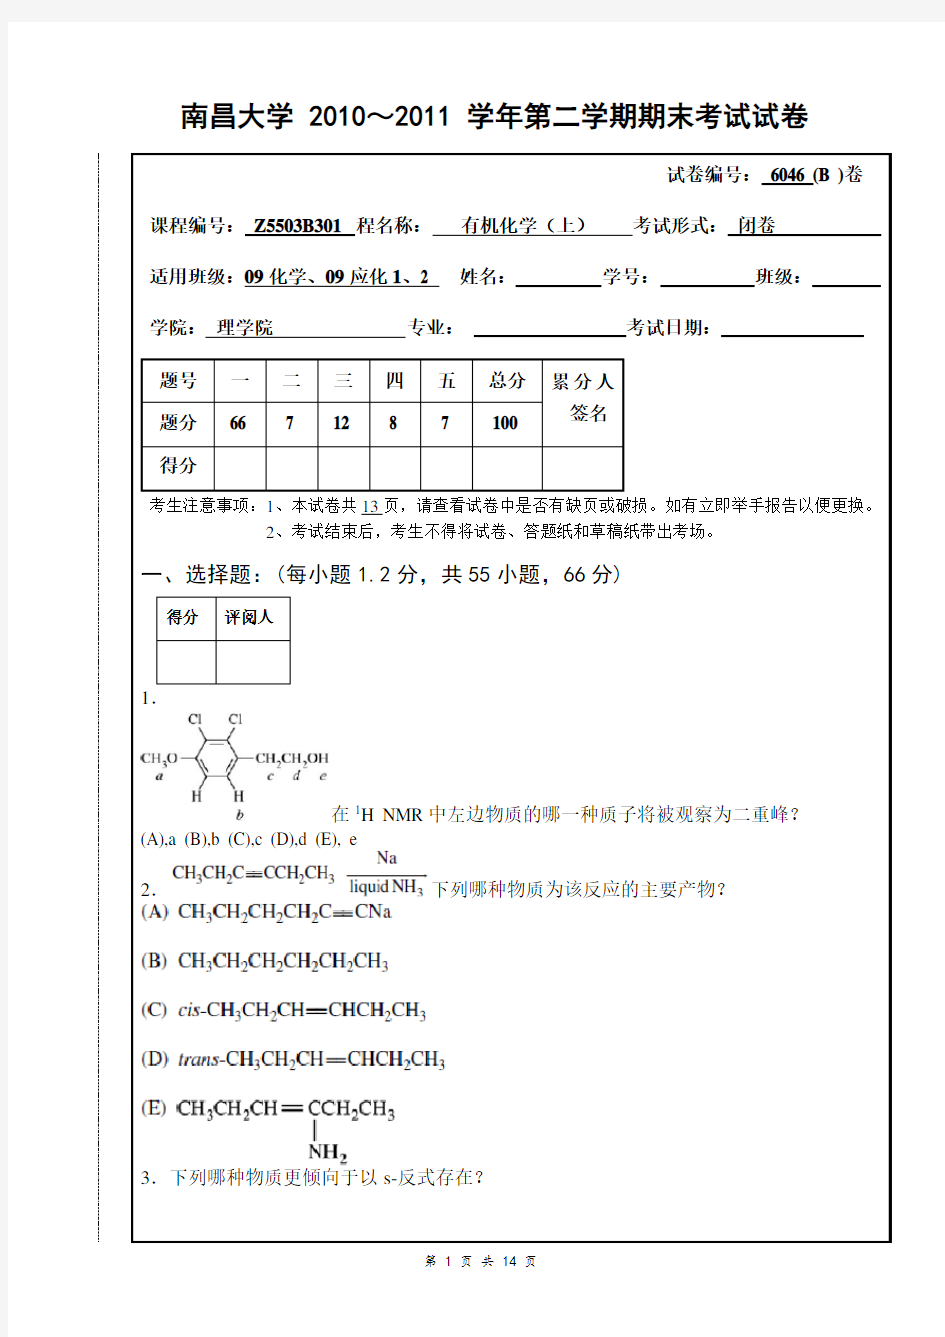 南昌大学2010-2011-2有机化学期末考试试卷(B)及答案